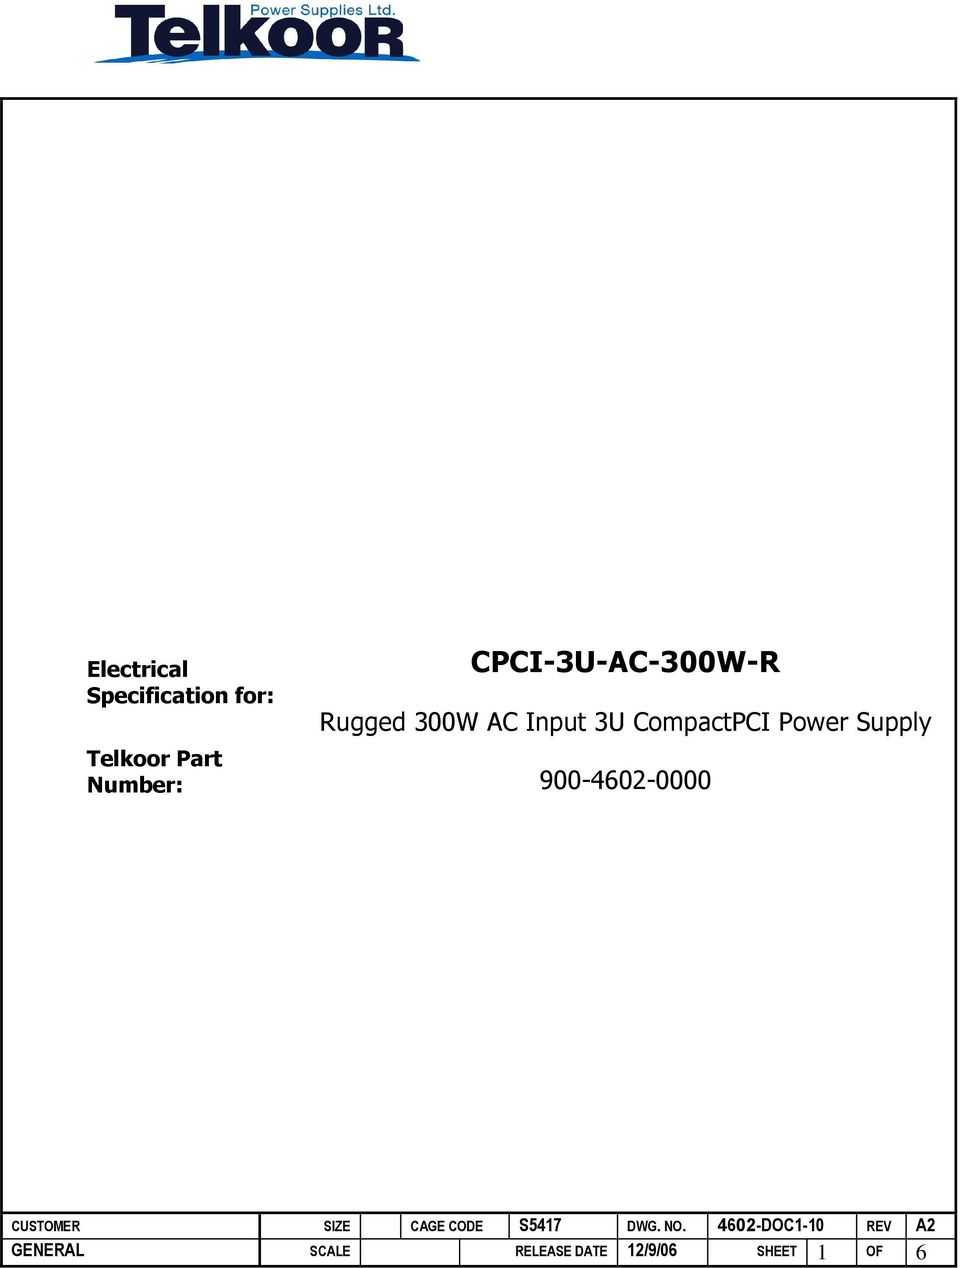 CompactPCI Power Supply Telkoor Part Number: